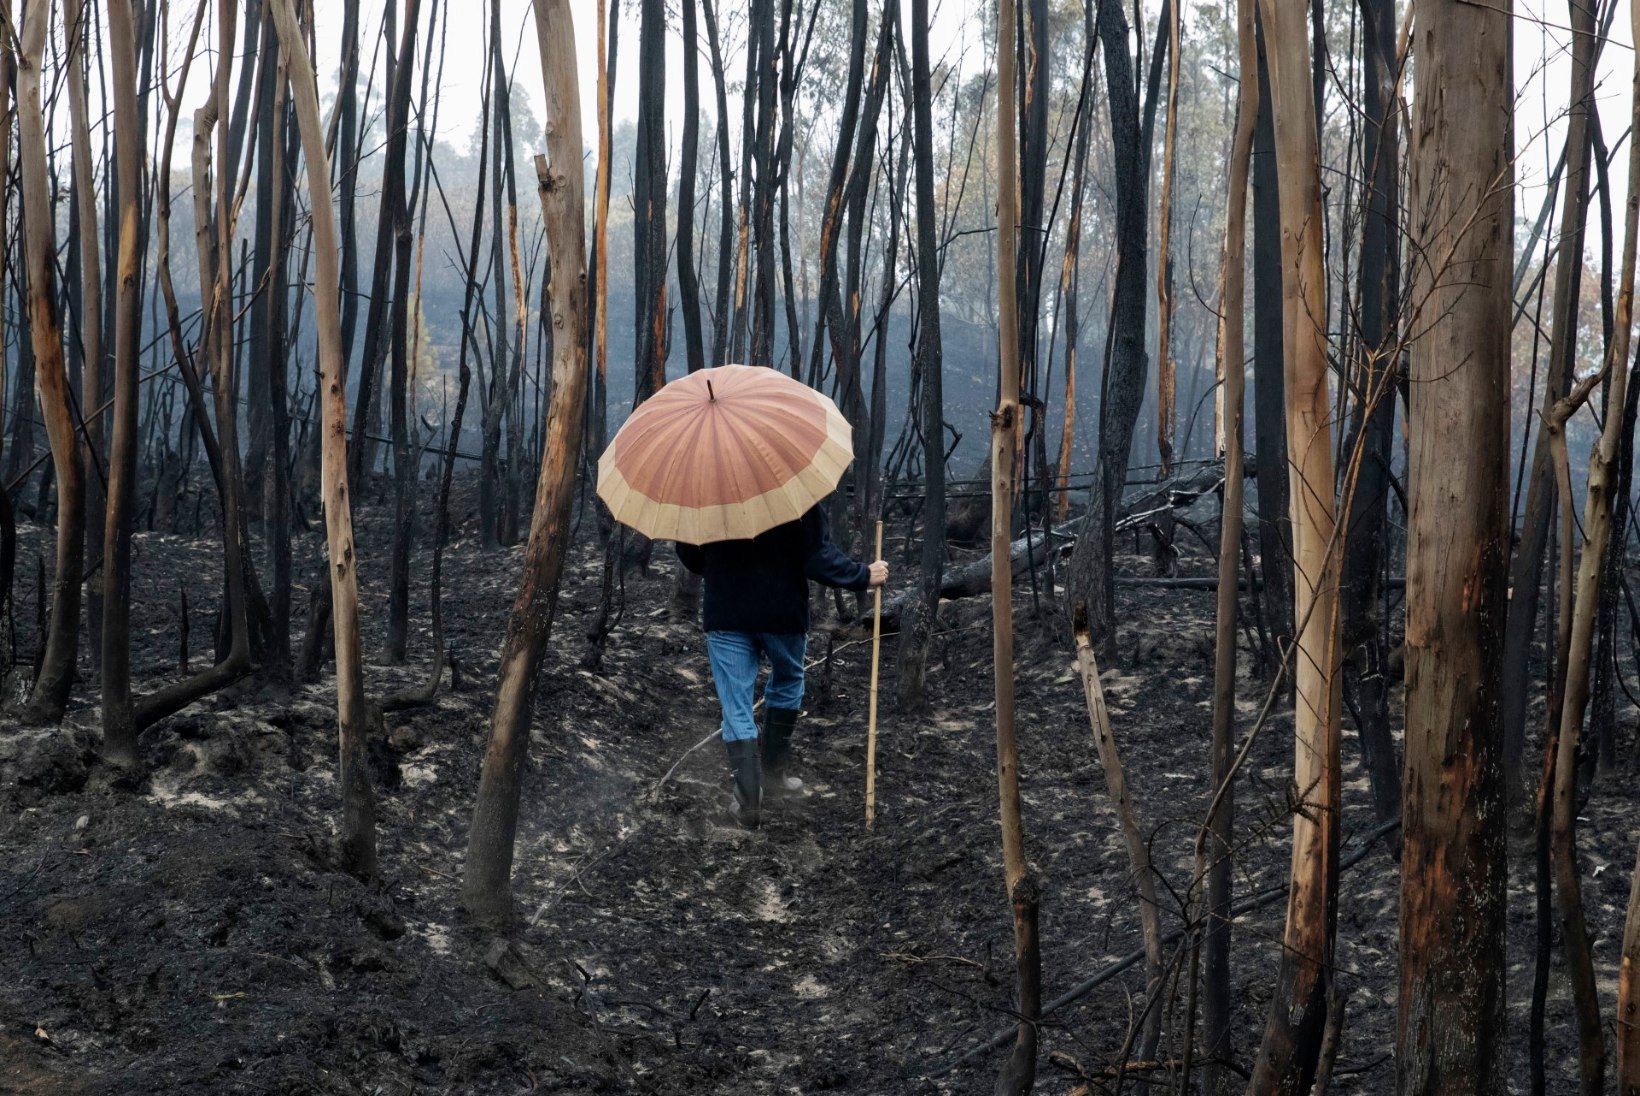 Metsapõlengud Portugalis on nõudnud juba 36 inimese elu, kuulutati välja kolm leinapäeva